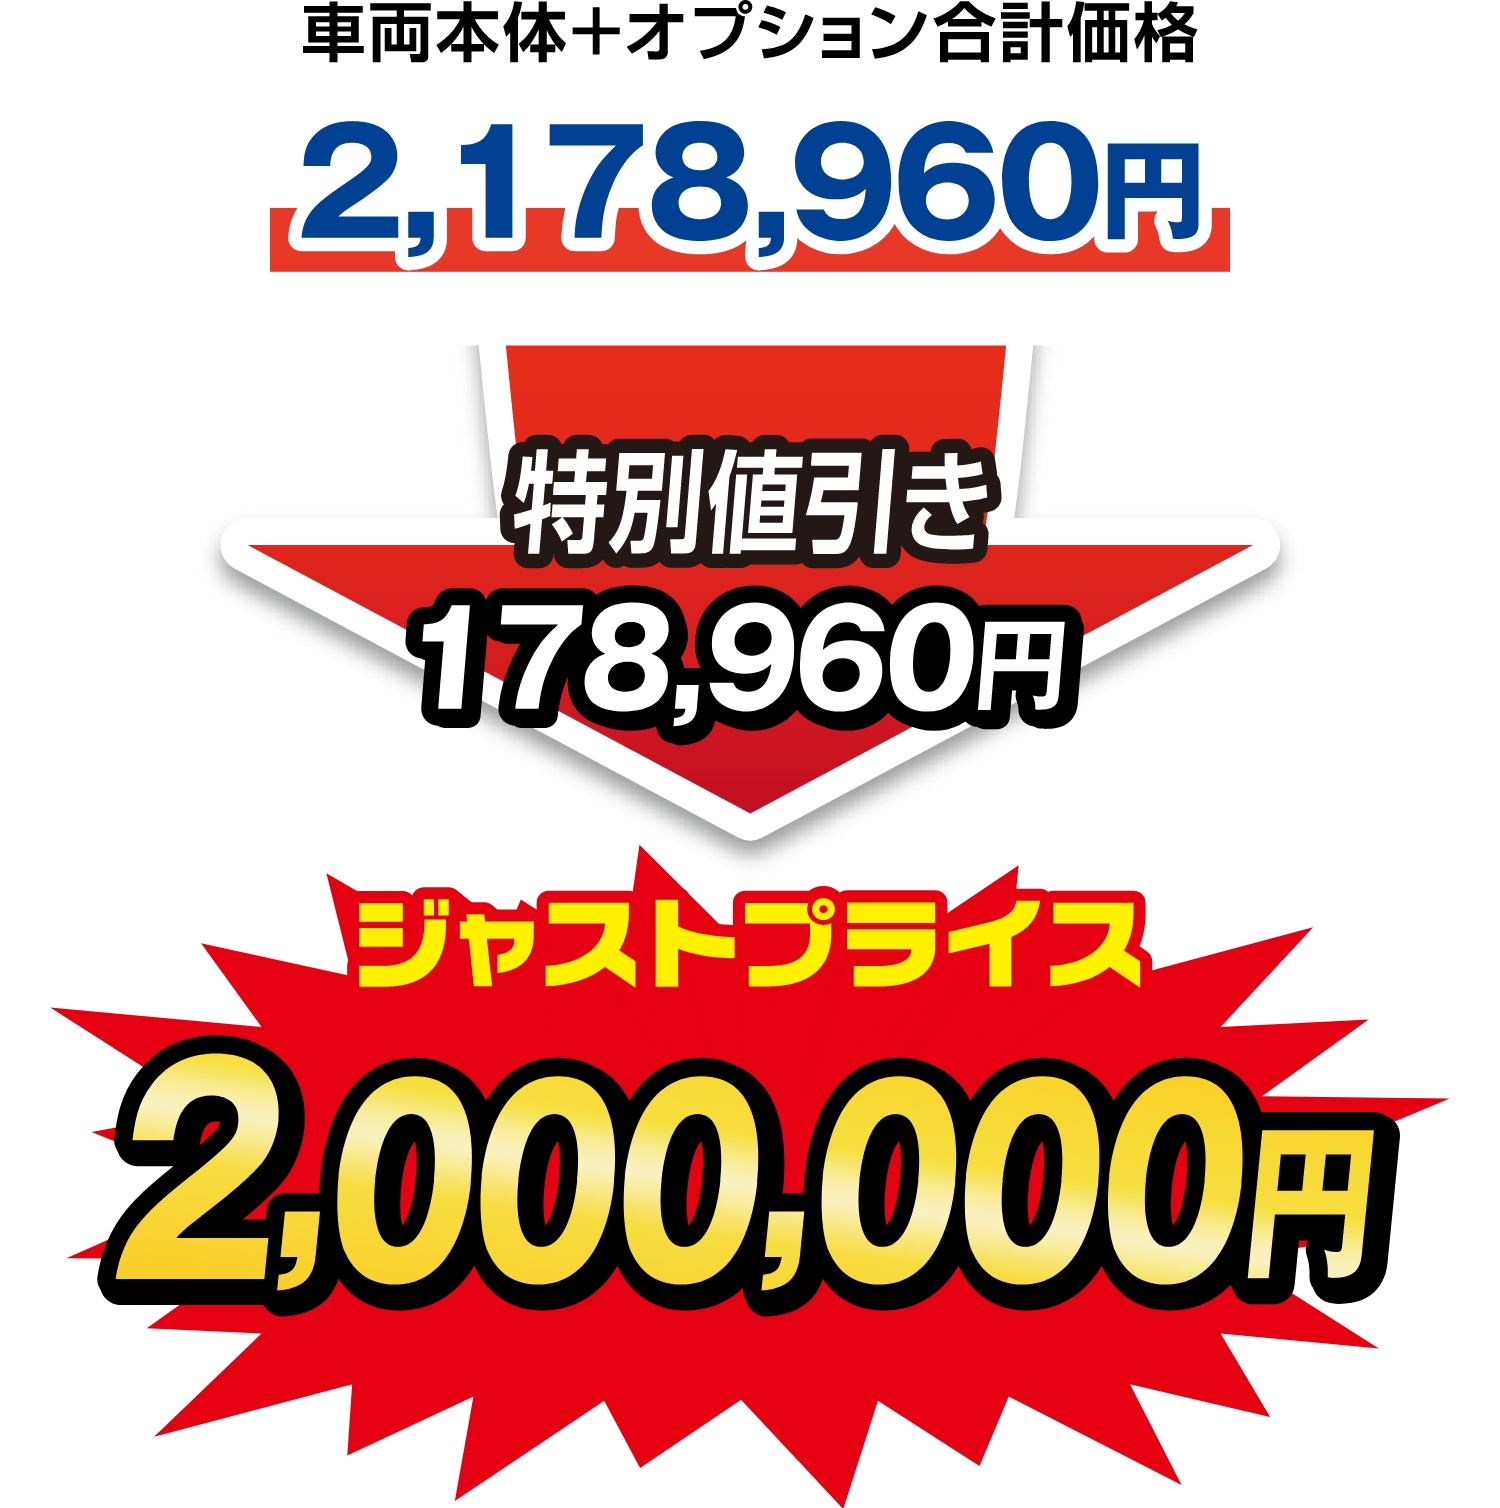 ジャストプライス2,000,000円